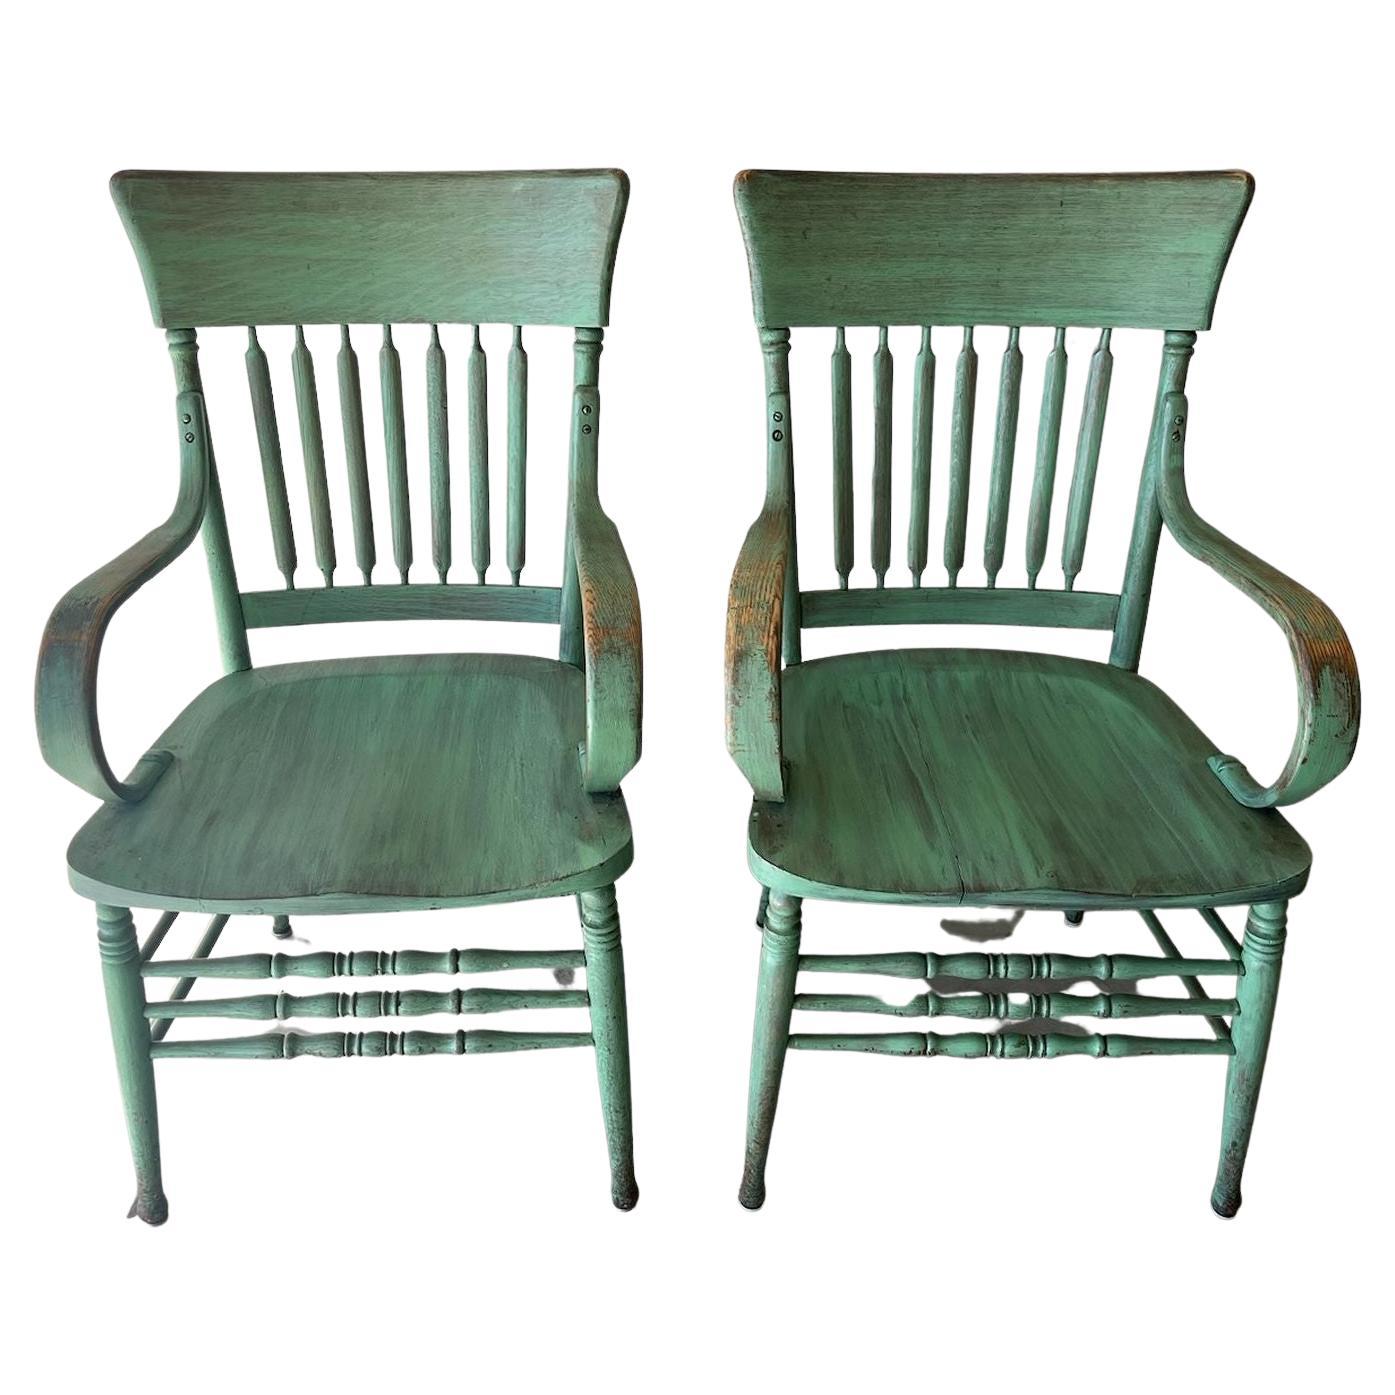 Paire de chaises à accoudoirs peintes en vert, datant du 20e siècle